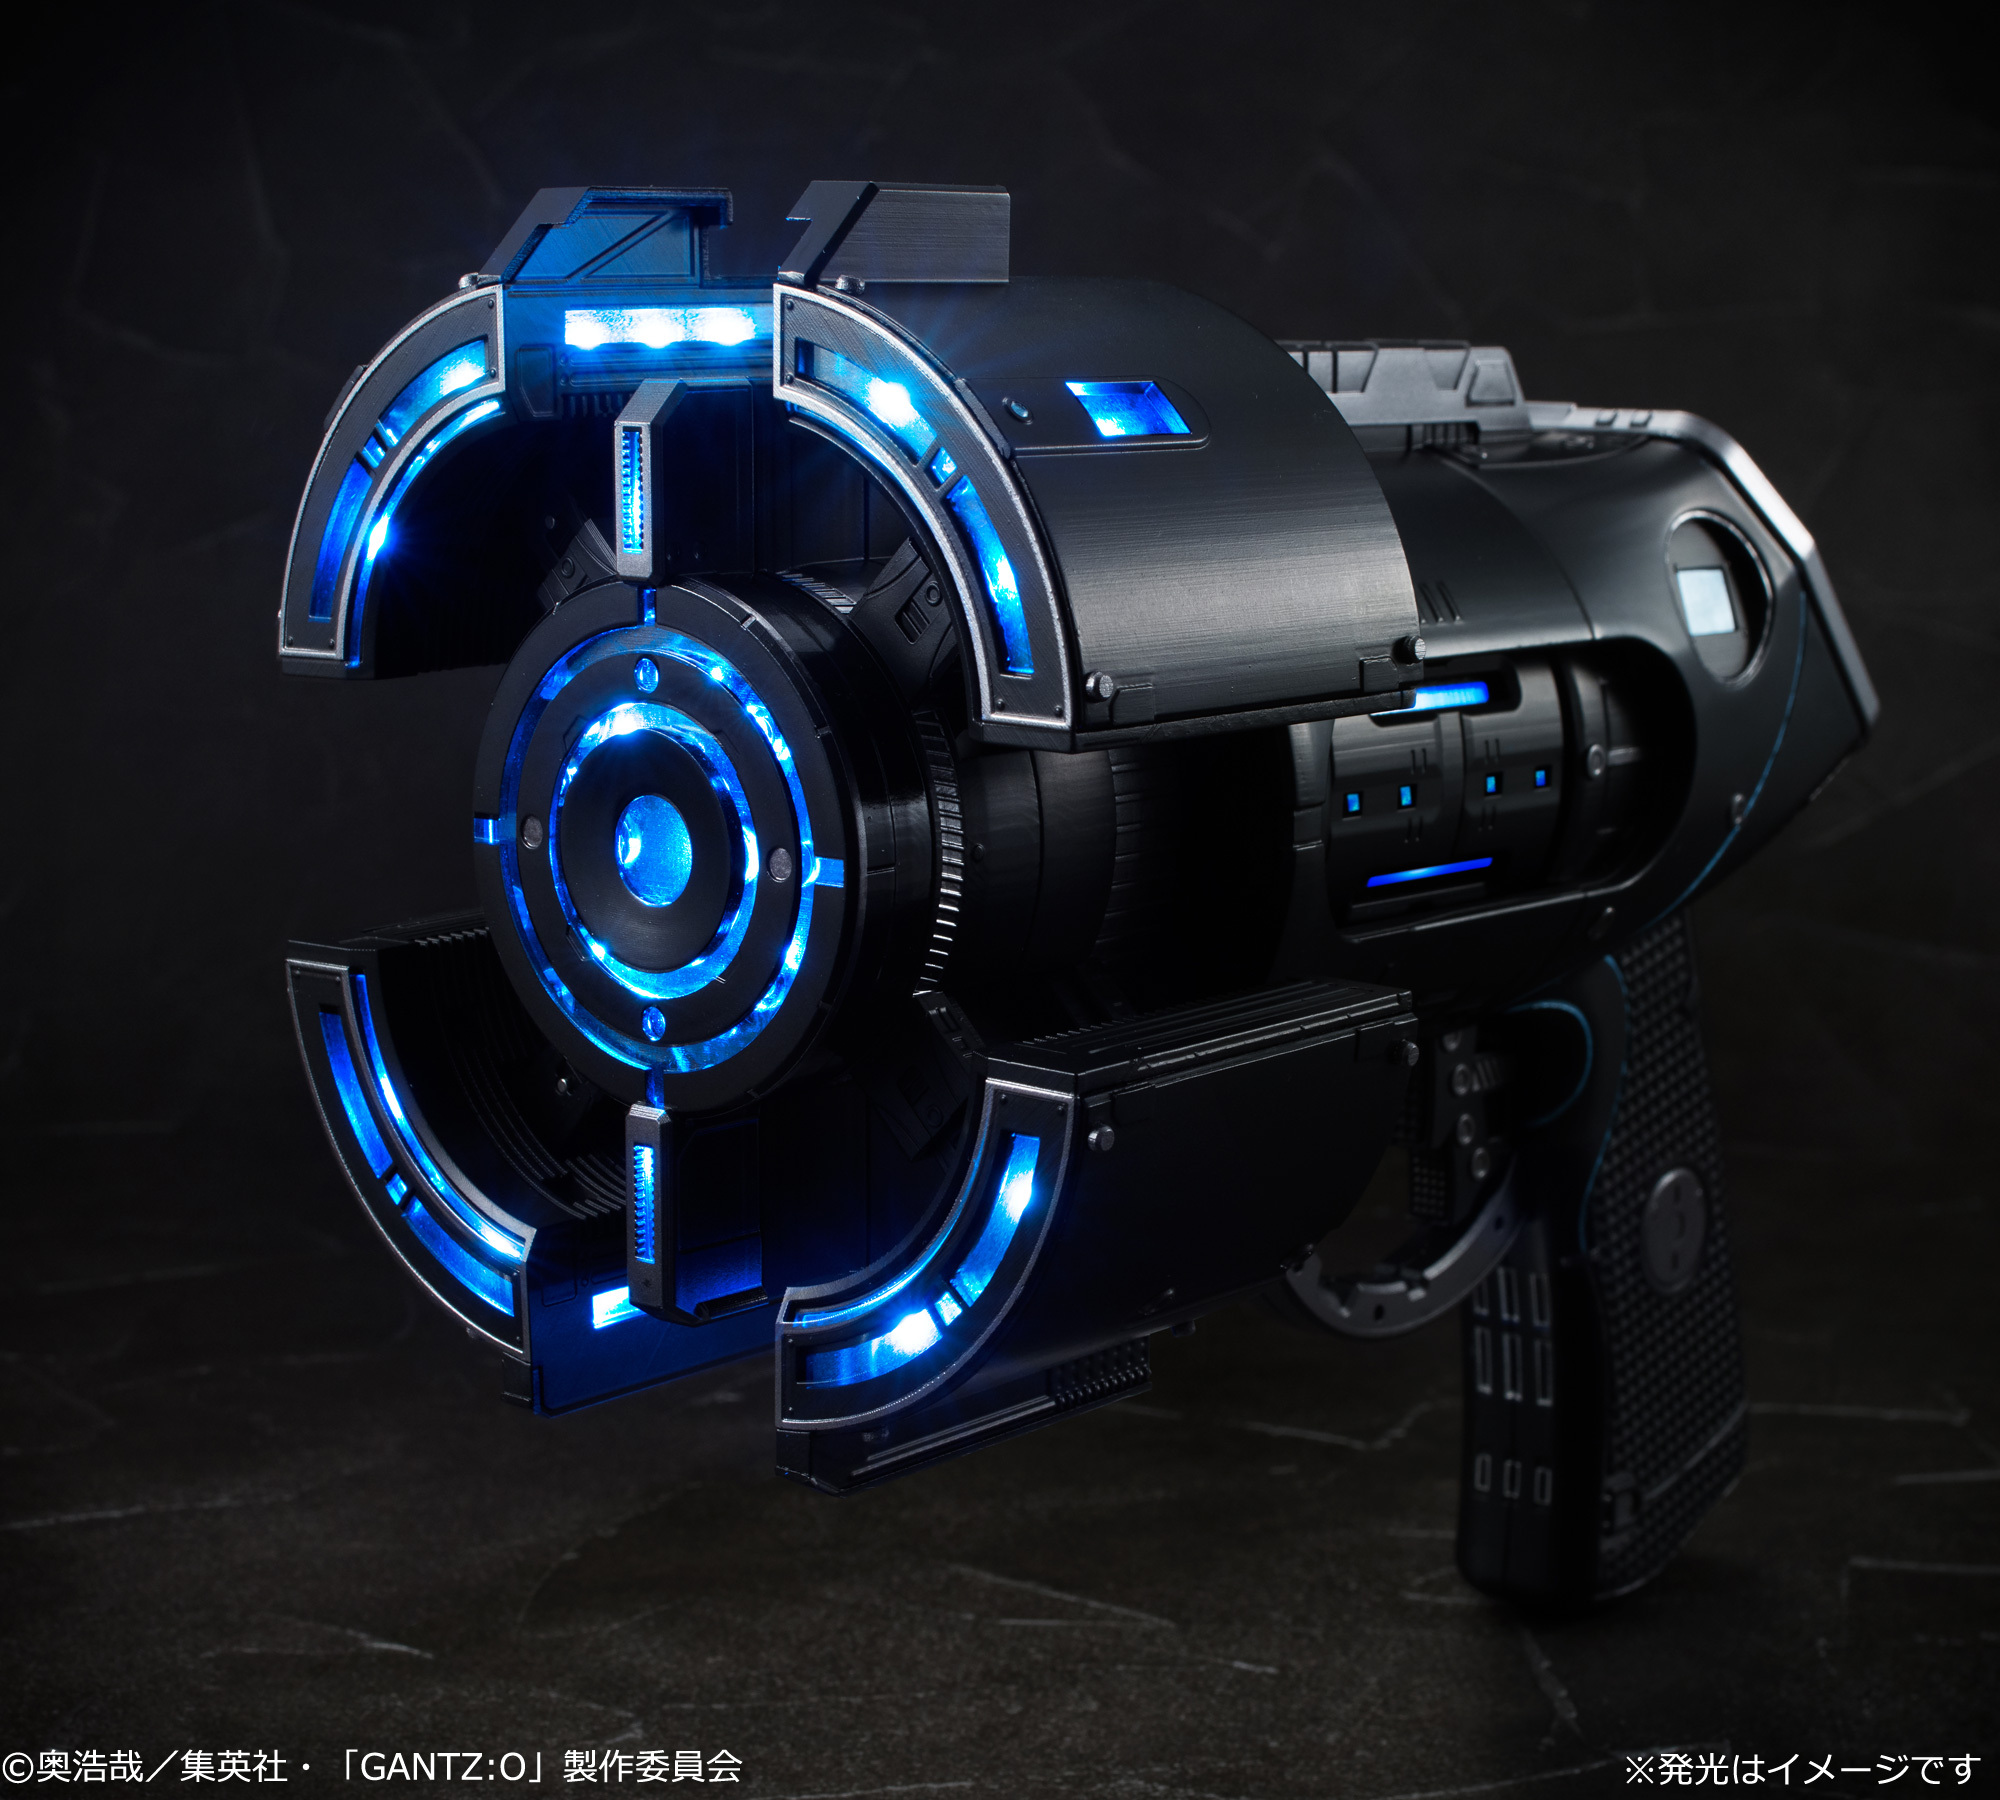 映画「GANTZ:O」の武器“Xガン”が実物大で登場 トリガーで銃が展開する